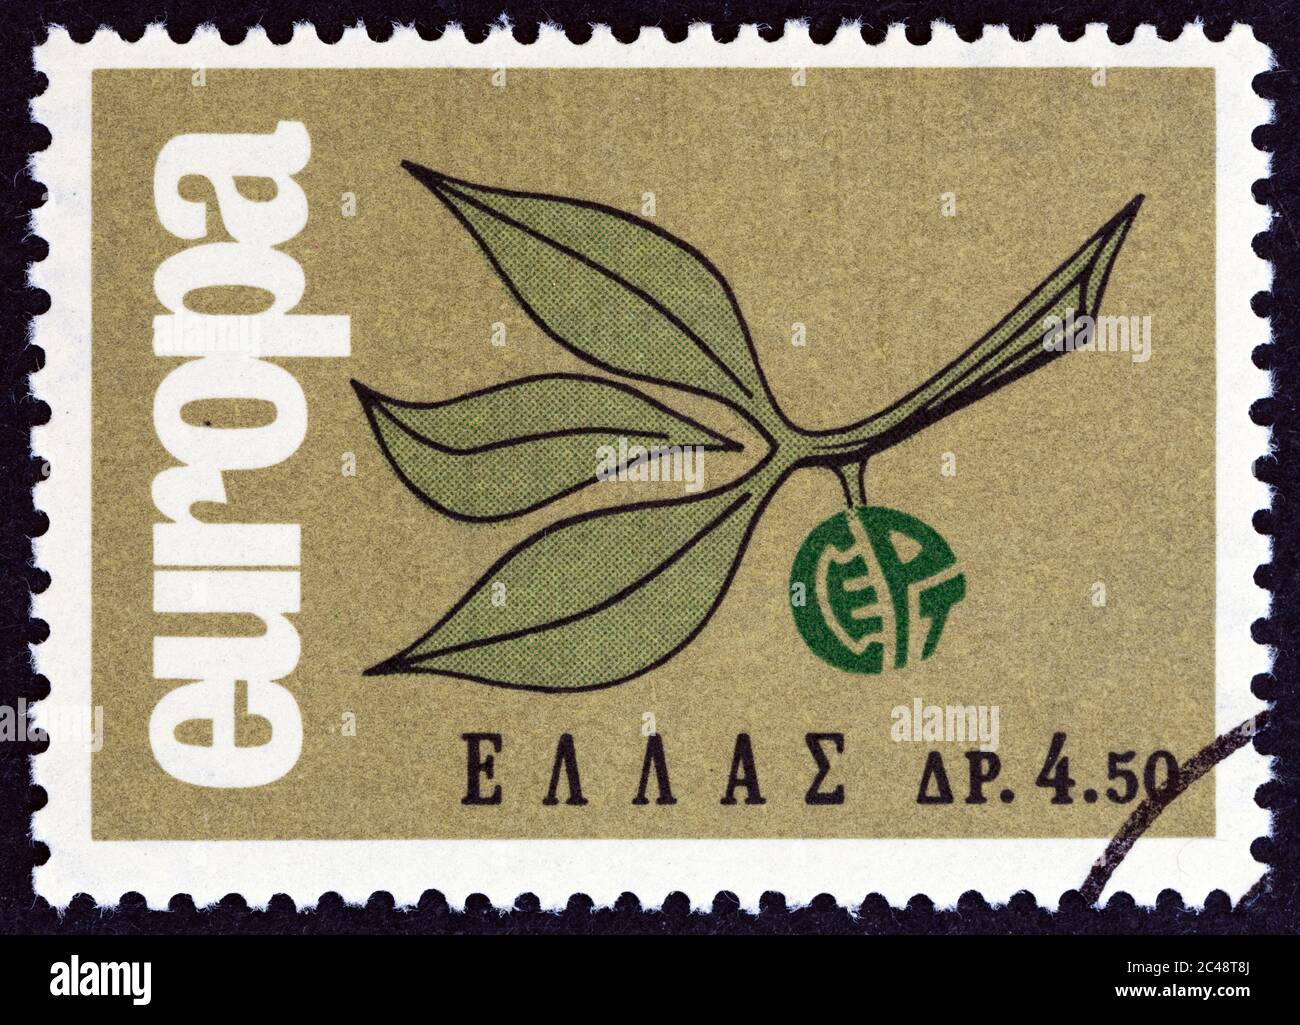 GRIECHENLAND - UM 1965: Eine in Griechenland gedruckte Briefmarke aus der 'Europa'-Ausgabe zeigt Europa Zweig, um 1965. Stockfoto